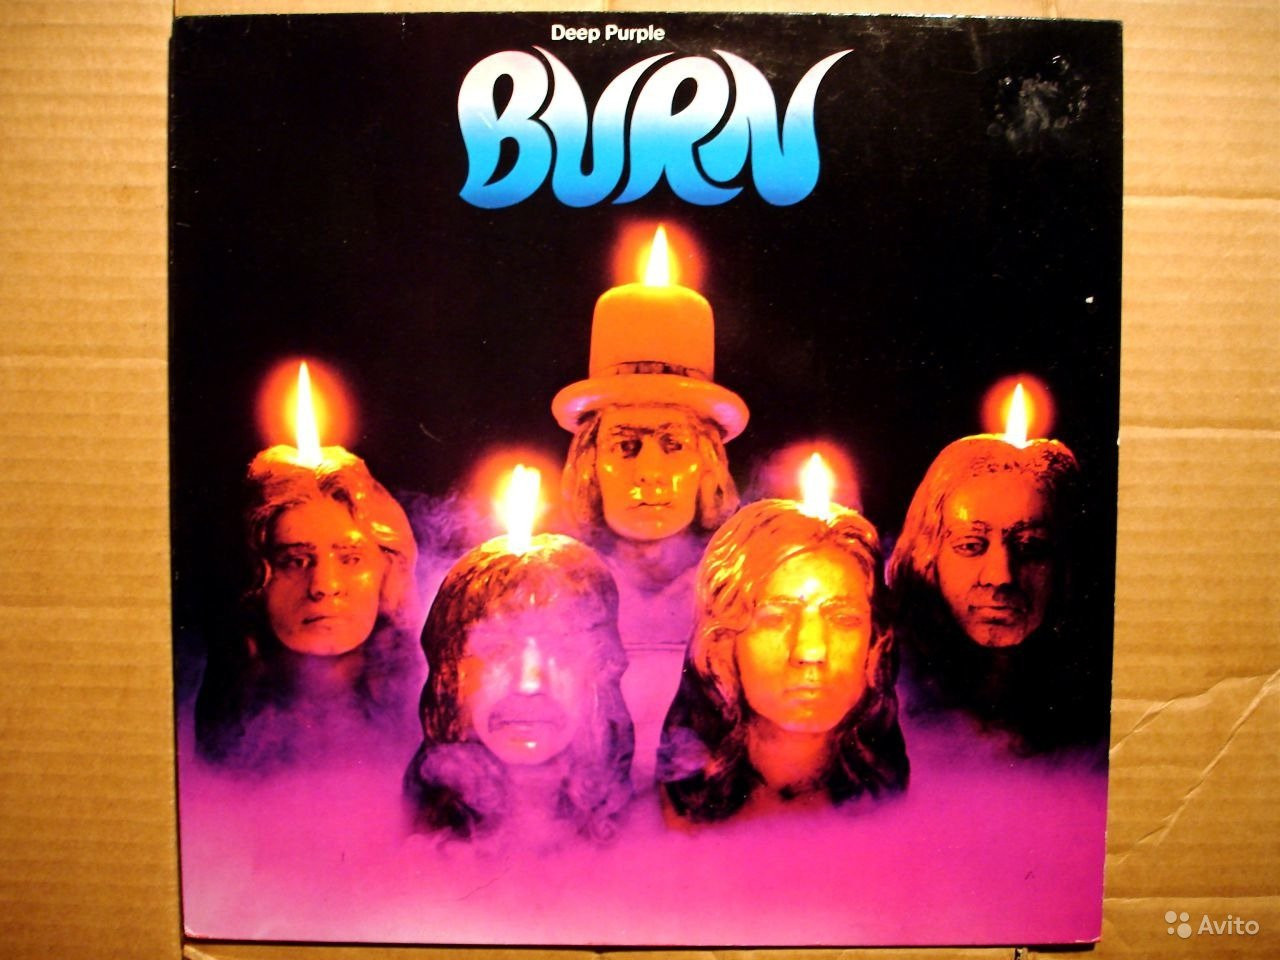 Купить дип перпл. Deep Purple Burn 1974 LP. Deep Purple Burn 1974 обложка. Винил Deep Purple Burn. Deep Purple "Burn (LP)".